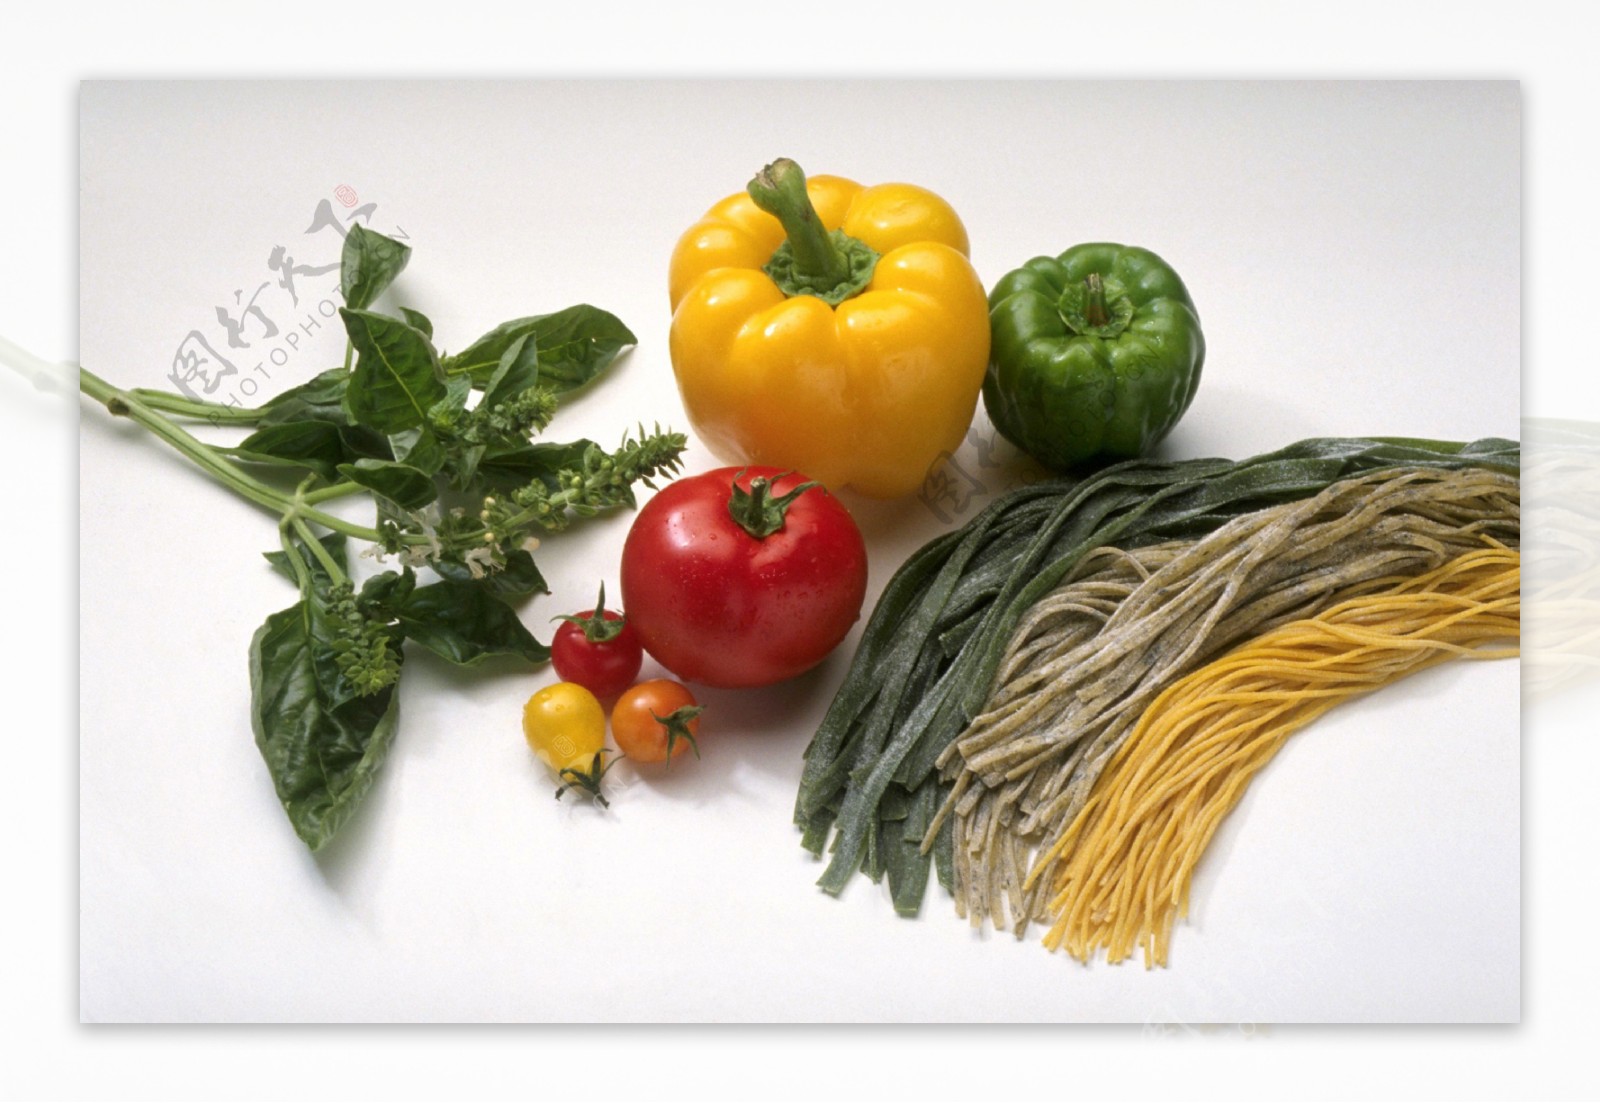 蔬菜白背景素材图图片